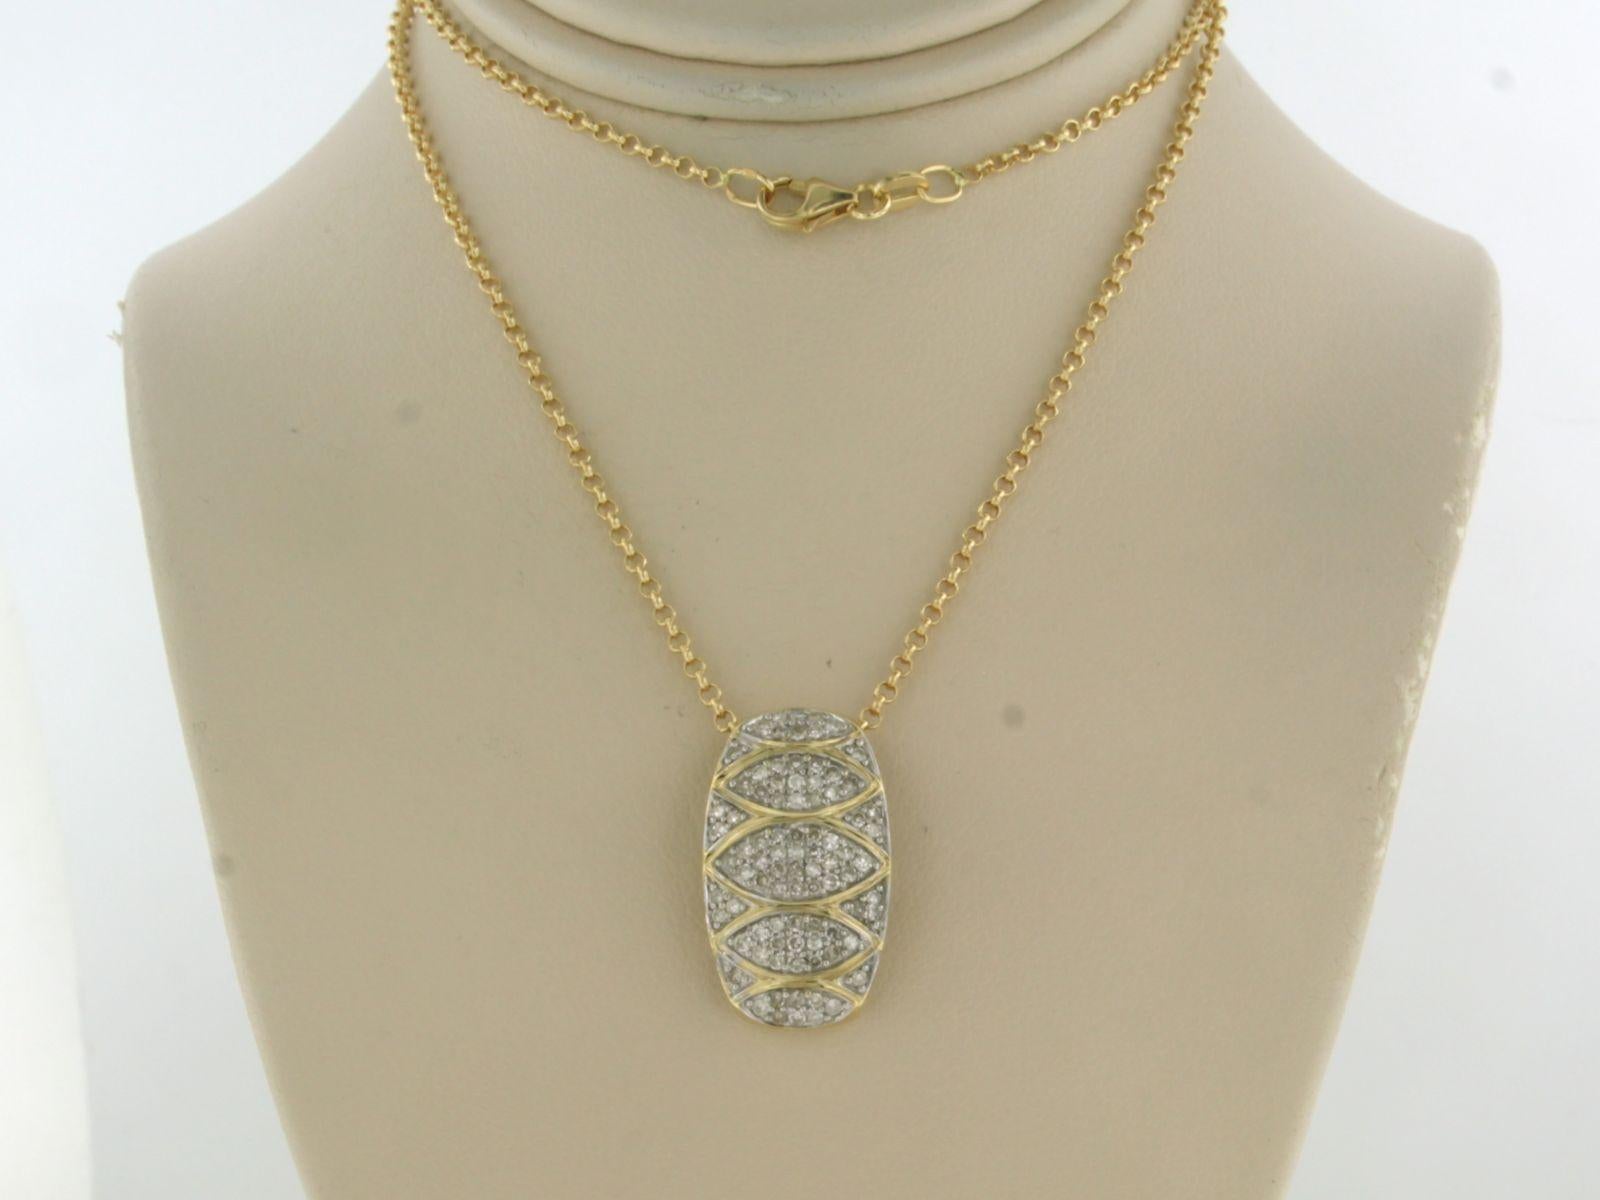 Collier en or jaune 18k et un pendentif en or bicolore avec des diamants taille unique. 0,50ct - F/G - VS/SI - 42 cm de long

Description détaillée

Le collier mesure 42 cm de long et 1,4 mm de large.

Les dimensions du pendentif sont de 2,0 cm de